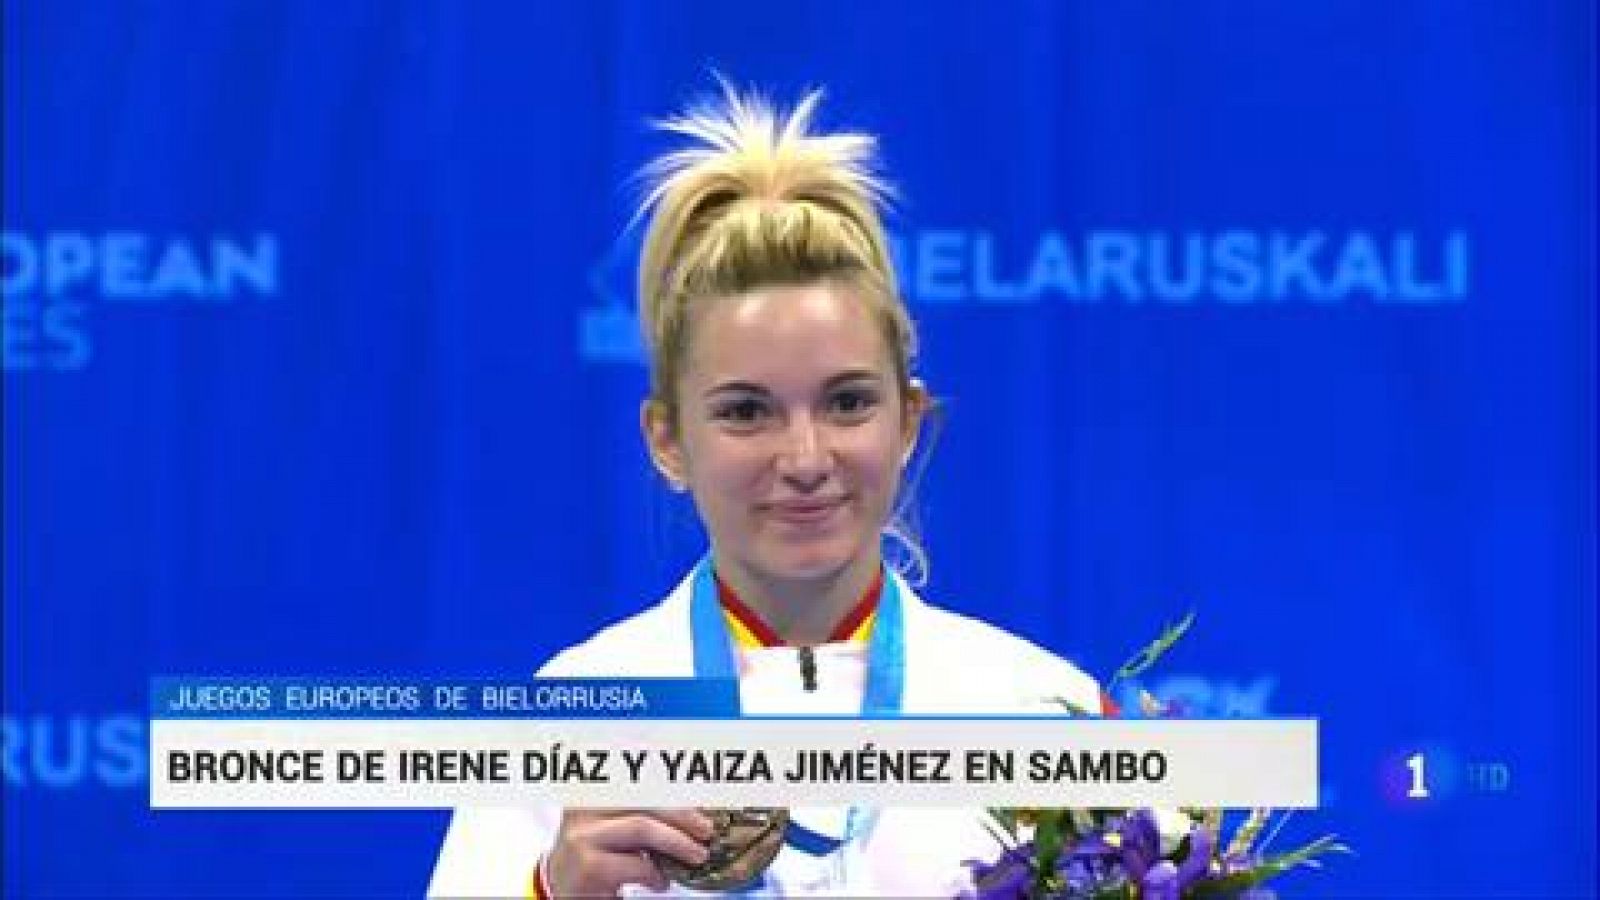 El sambo ha dado dos nuevos metales a España en los Juegos Europeos de Minsk 2019. Irene Díaz y Yaiza Jiménez se han colgado sendas medallas de bronce en las categorías de -52 y -60 kilos.